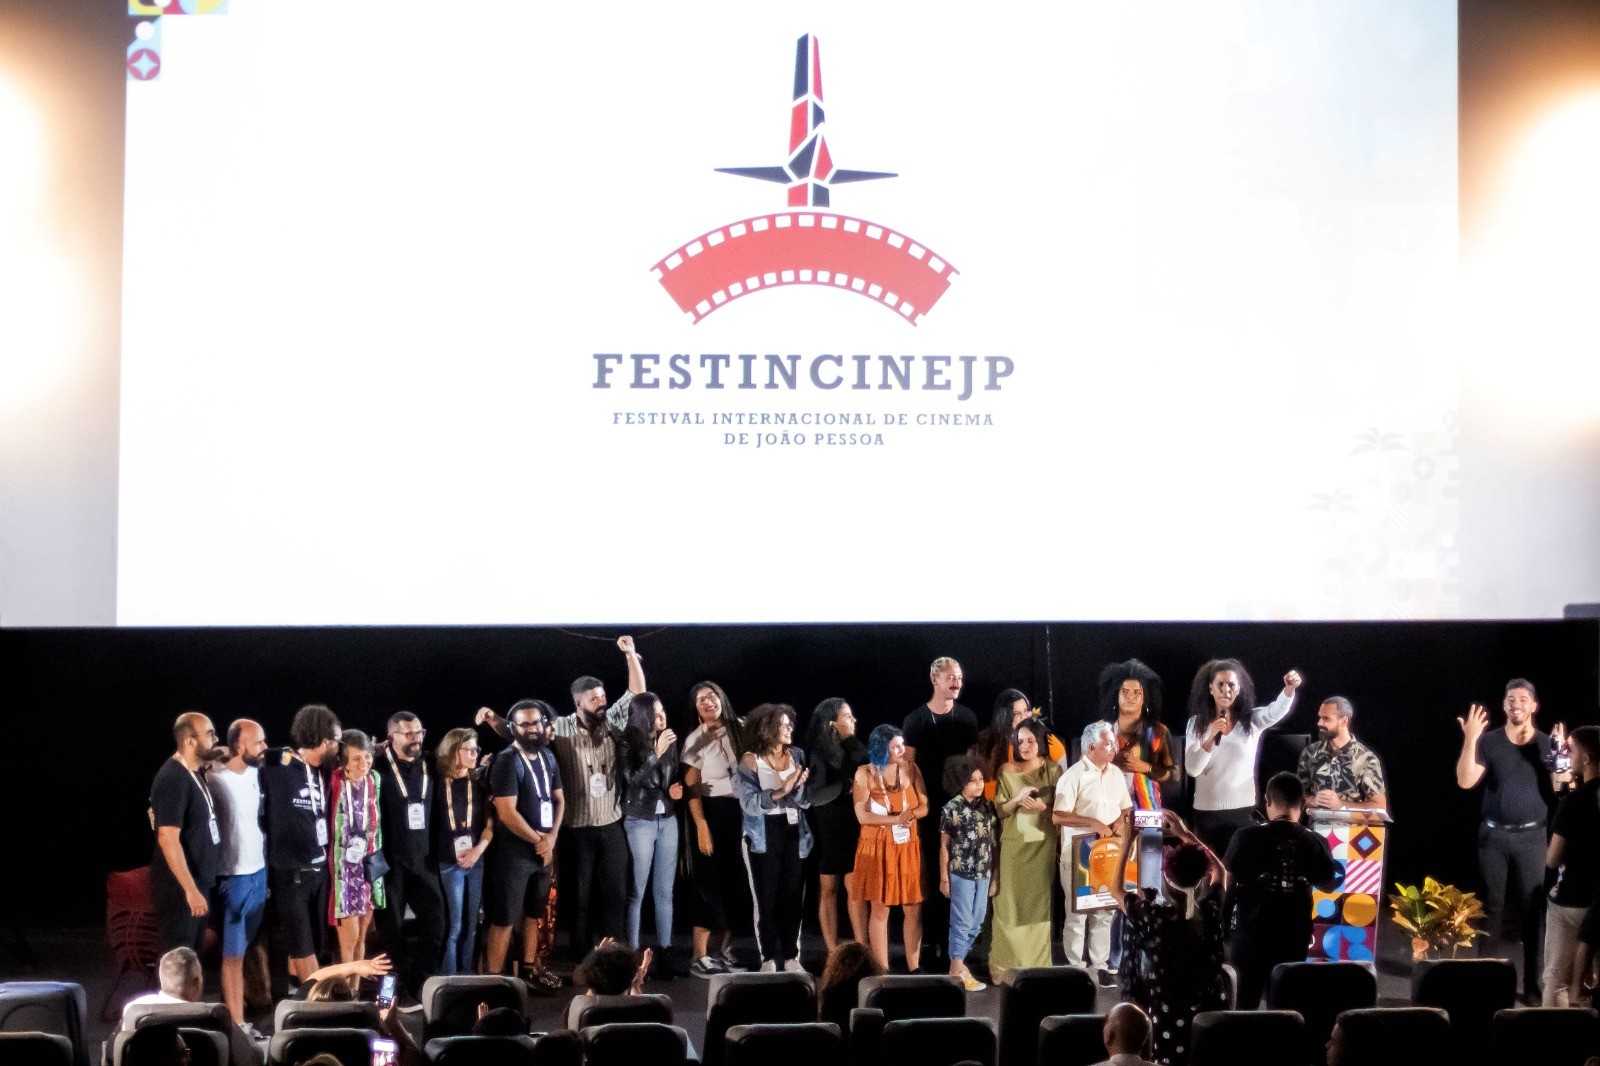 FestincineJP: festival terá salas para exibição gratuita de filmes em João Pessoa